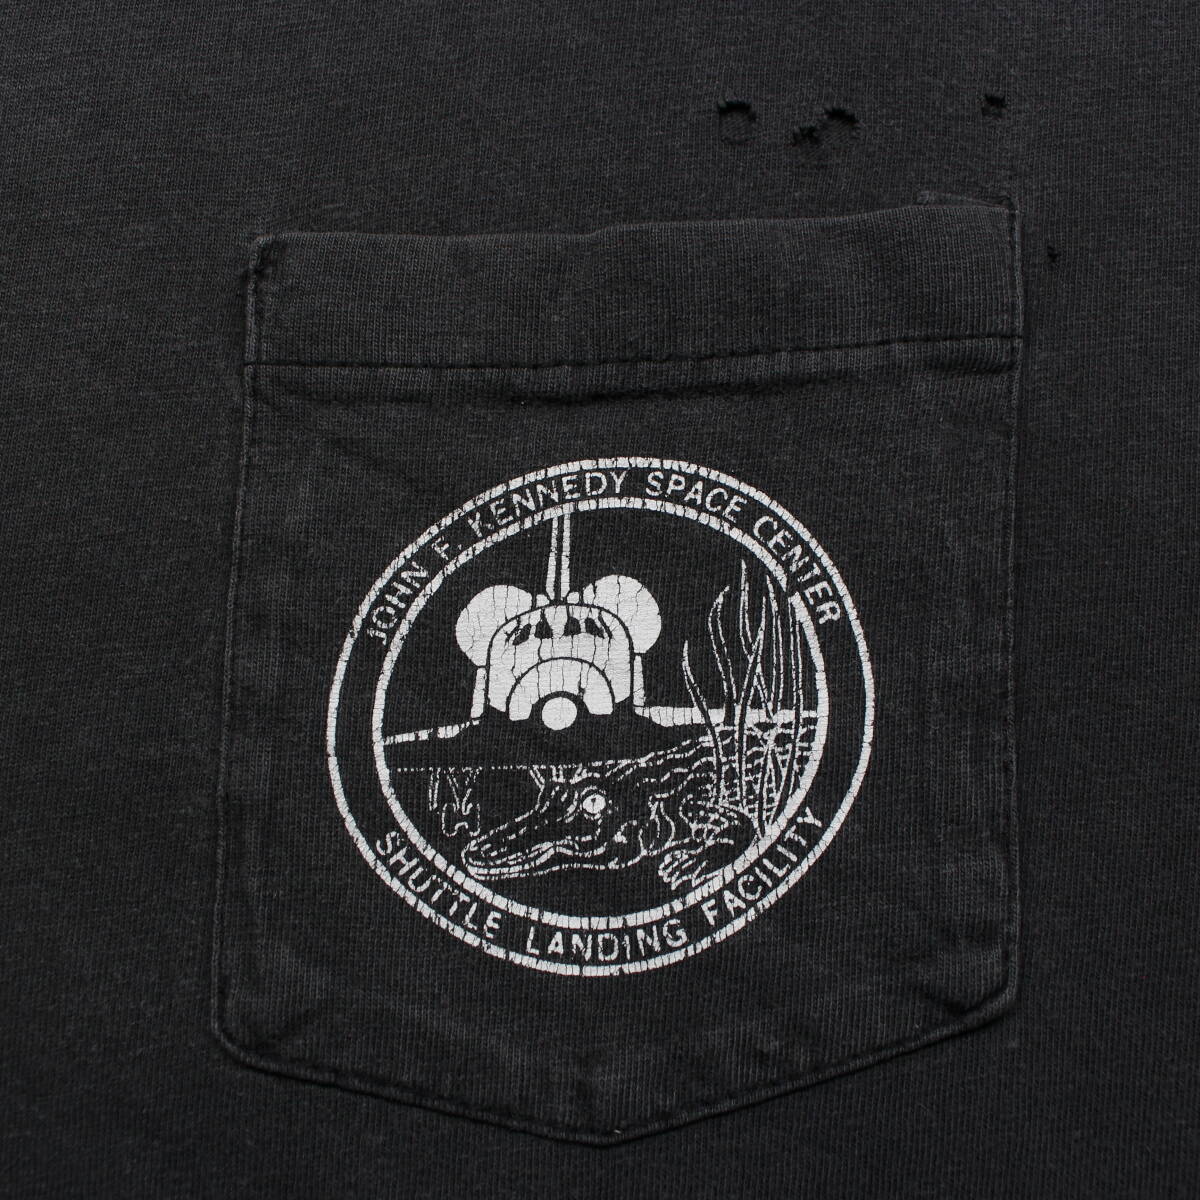 1990s アメリカ航空宇宙局 NASA ジョン F ケネディ宇宙センター ヴィンテージTシャツ 月面 アートXXL古着 地球 スペースUSAアポロ フェード_胸ポケット上部に小穴　フロリダ名物のワニ